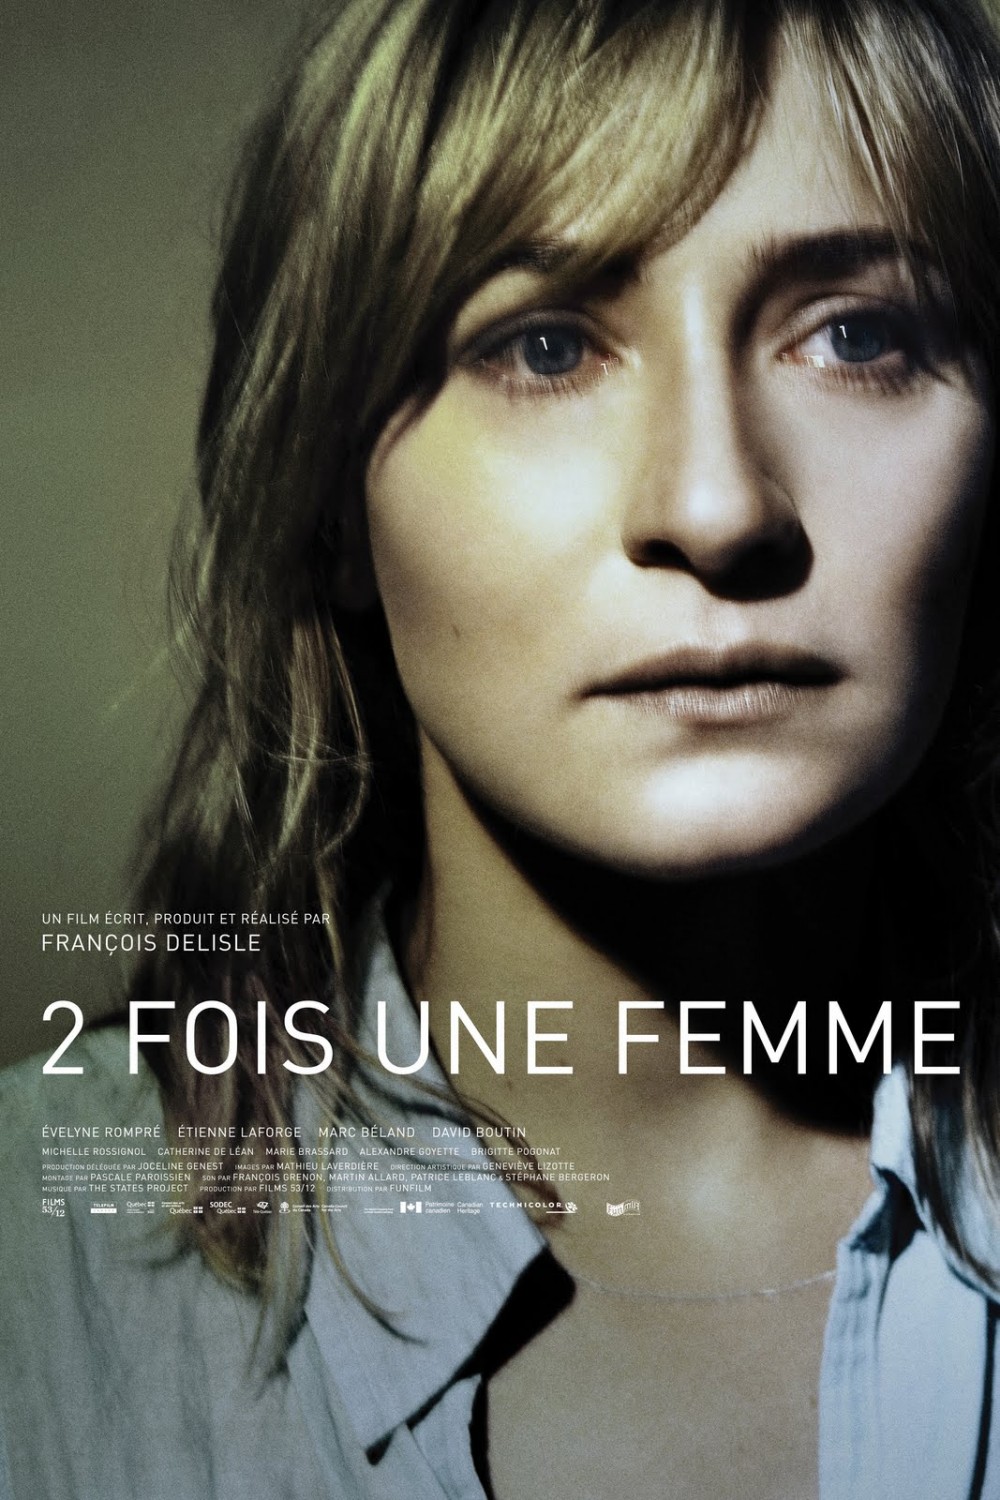 2 fois une femme (2009)